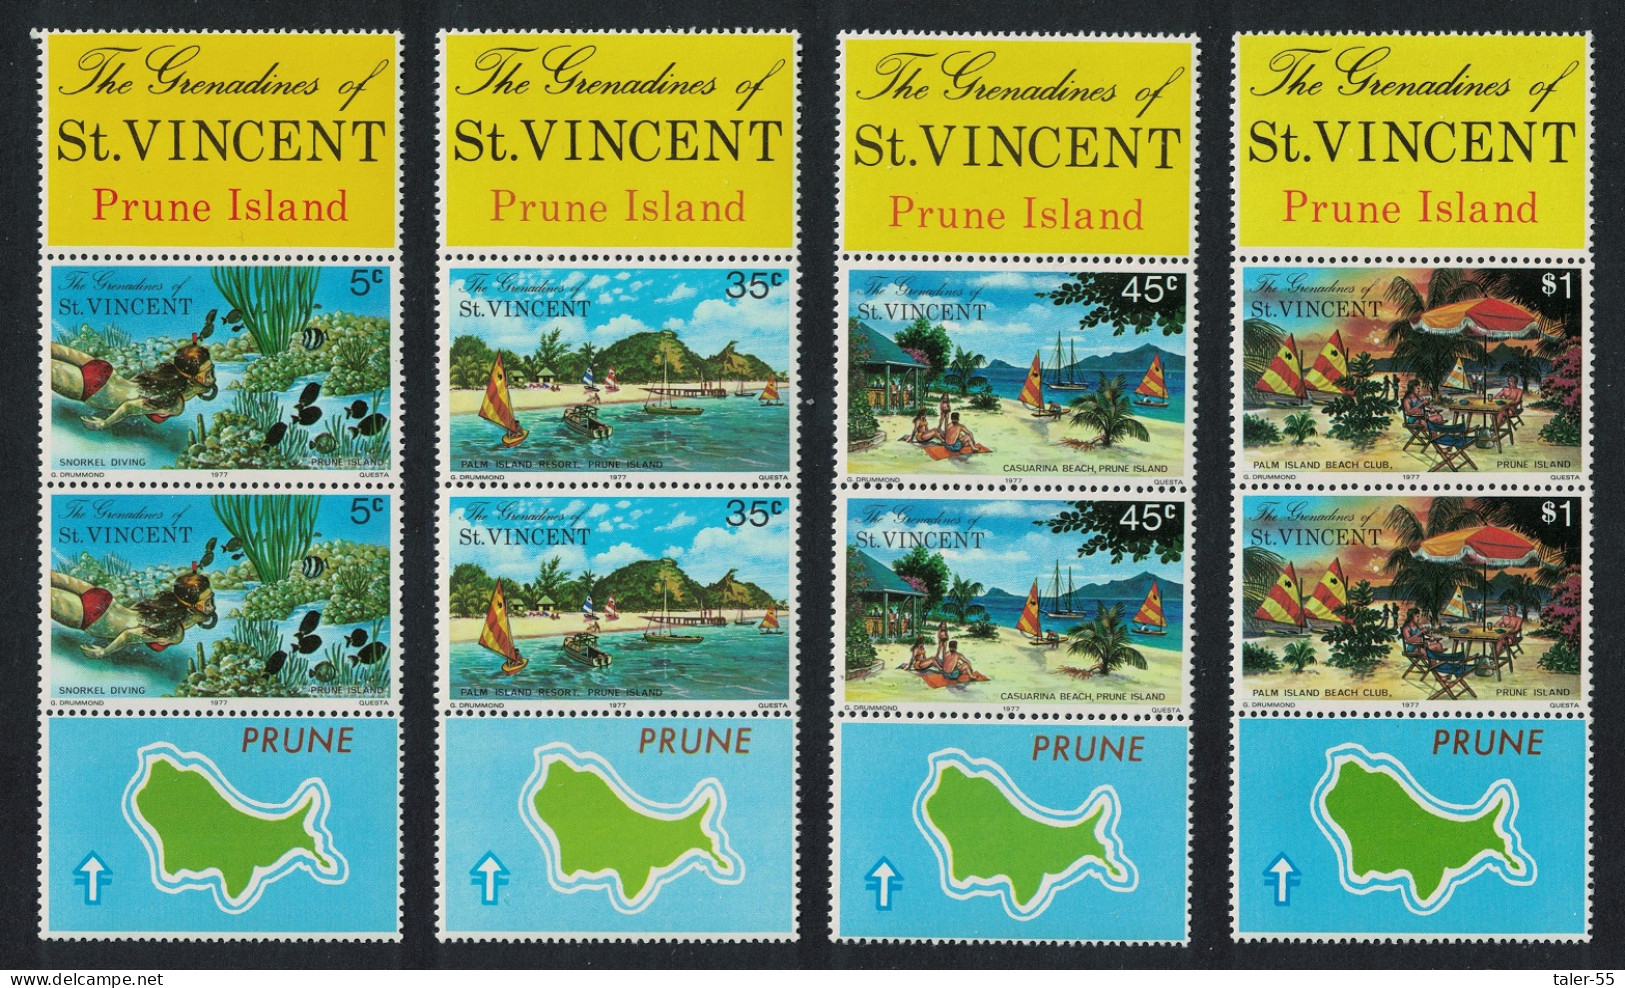 St. Vincent Gren Prune Island Snorkel Diving Pairs Both Labels 1976 MNH SG#100-103 - St.Vincent & Grenadines